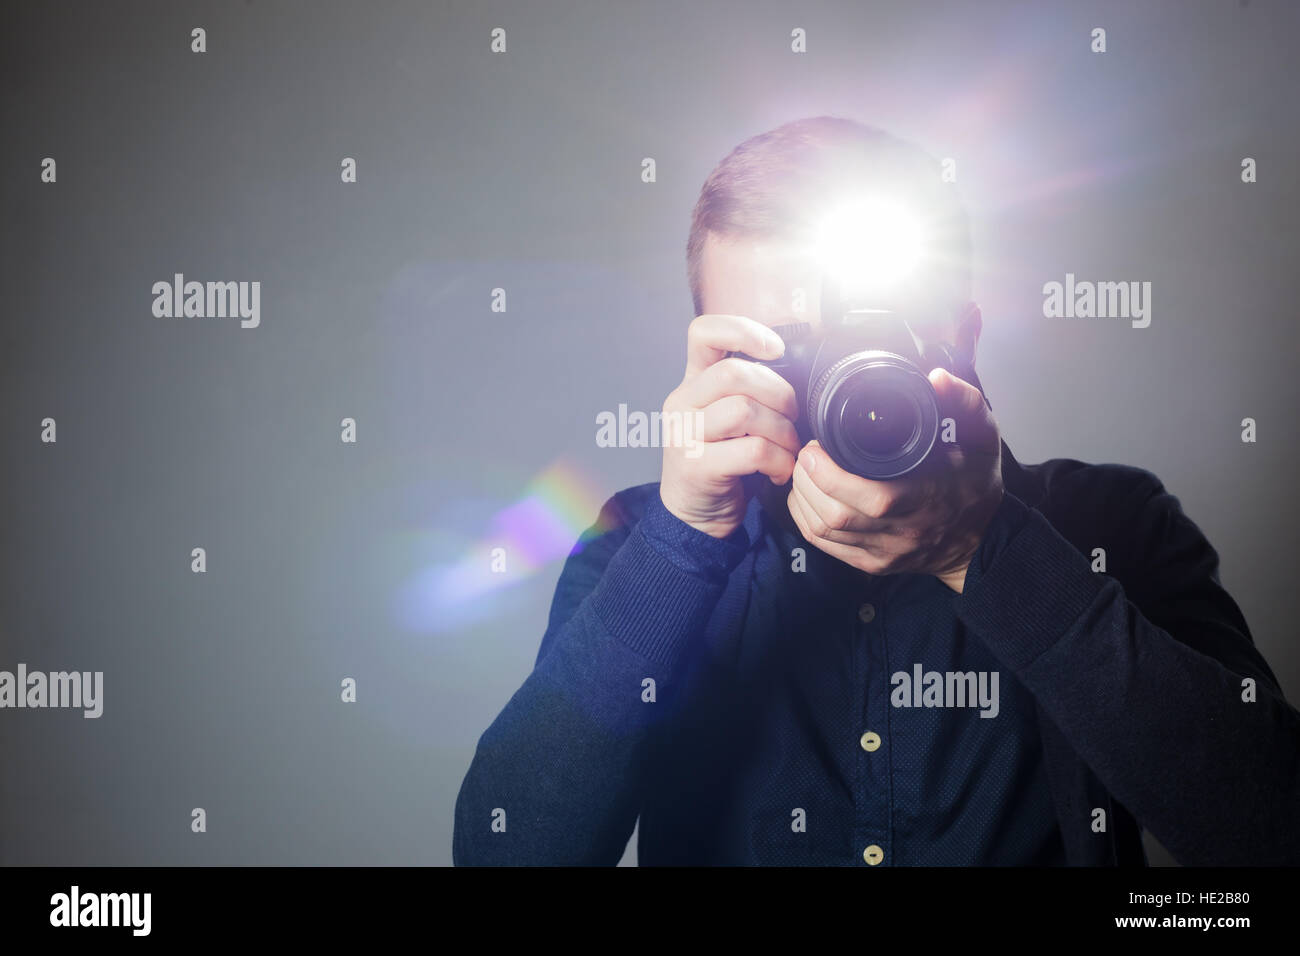 Jeune homme prend une photo sur un appareil photo avec flash intégré. La lumière lumineuse pour l'éclairage de l'image. Banque D'Images